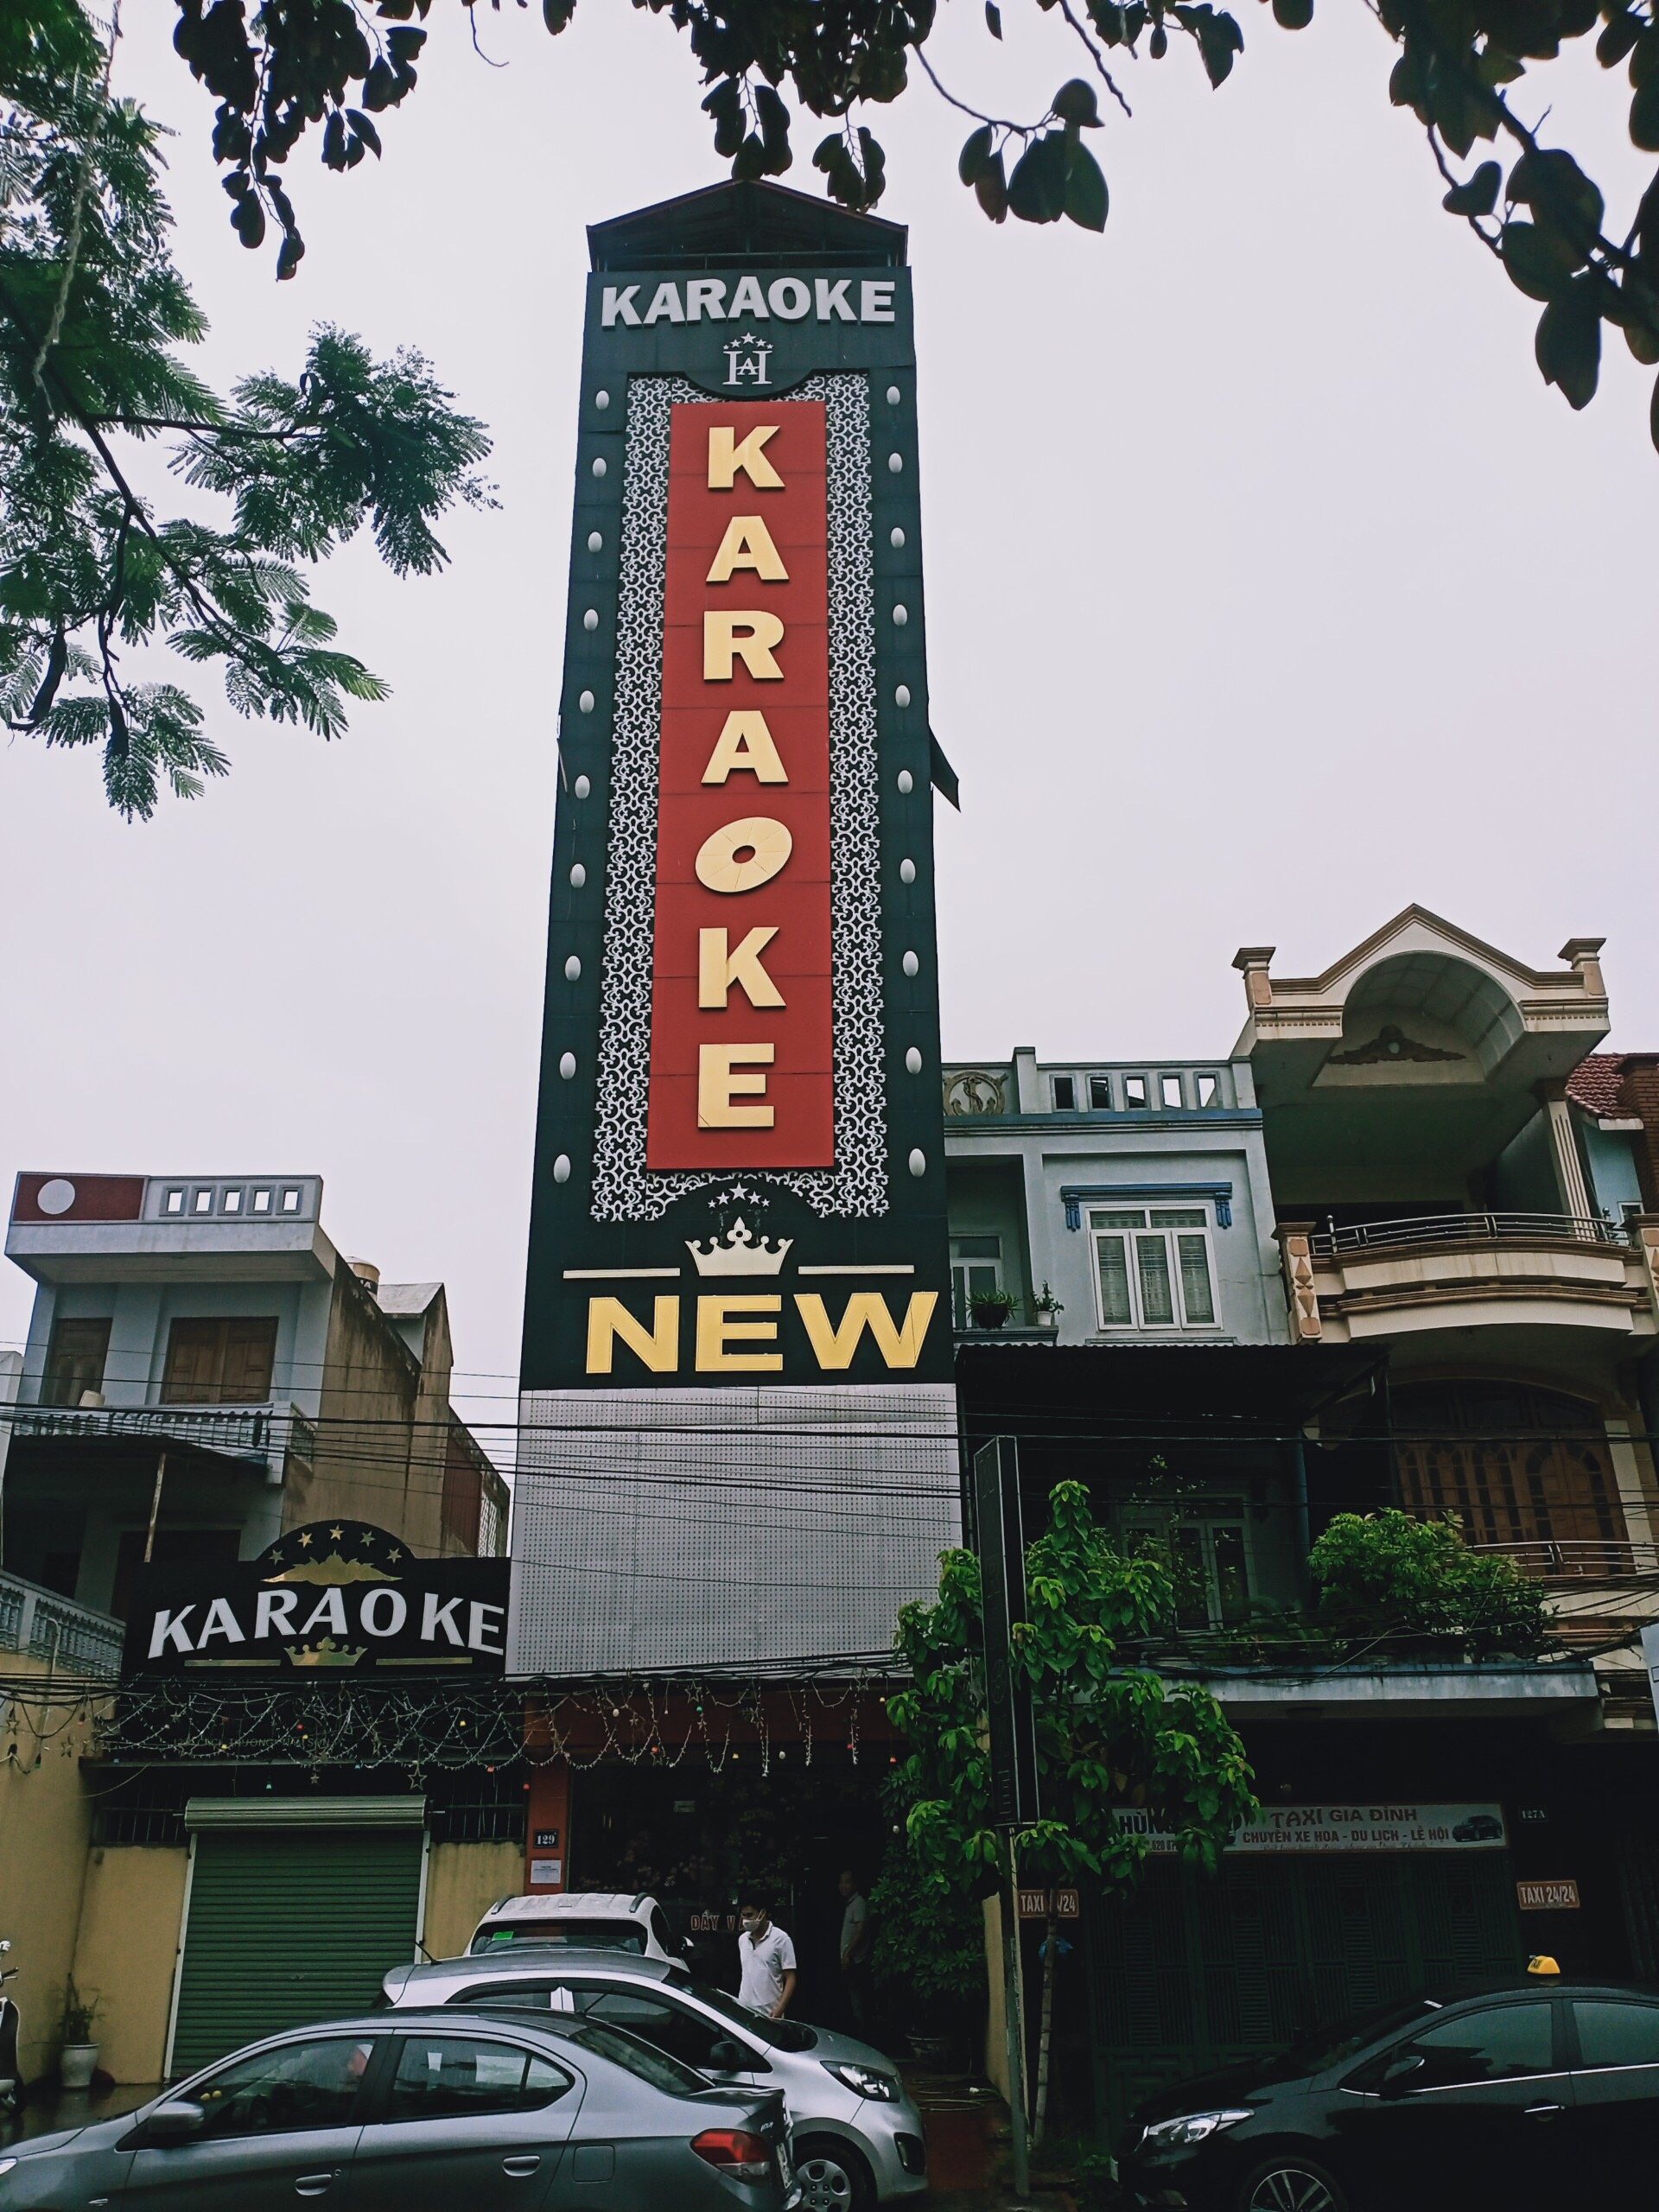 Quán karaoke NEW 5 Sao bất chấp dịch bệnh vẫn mở cửa cho khách quen sử dụng ma túy trong phòng hát 